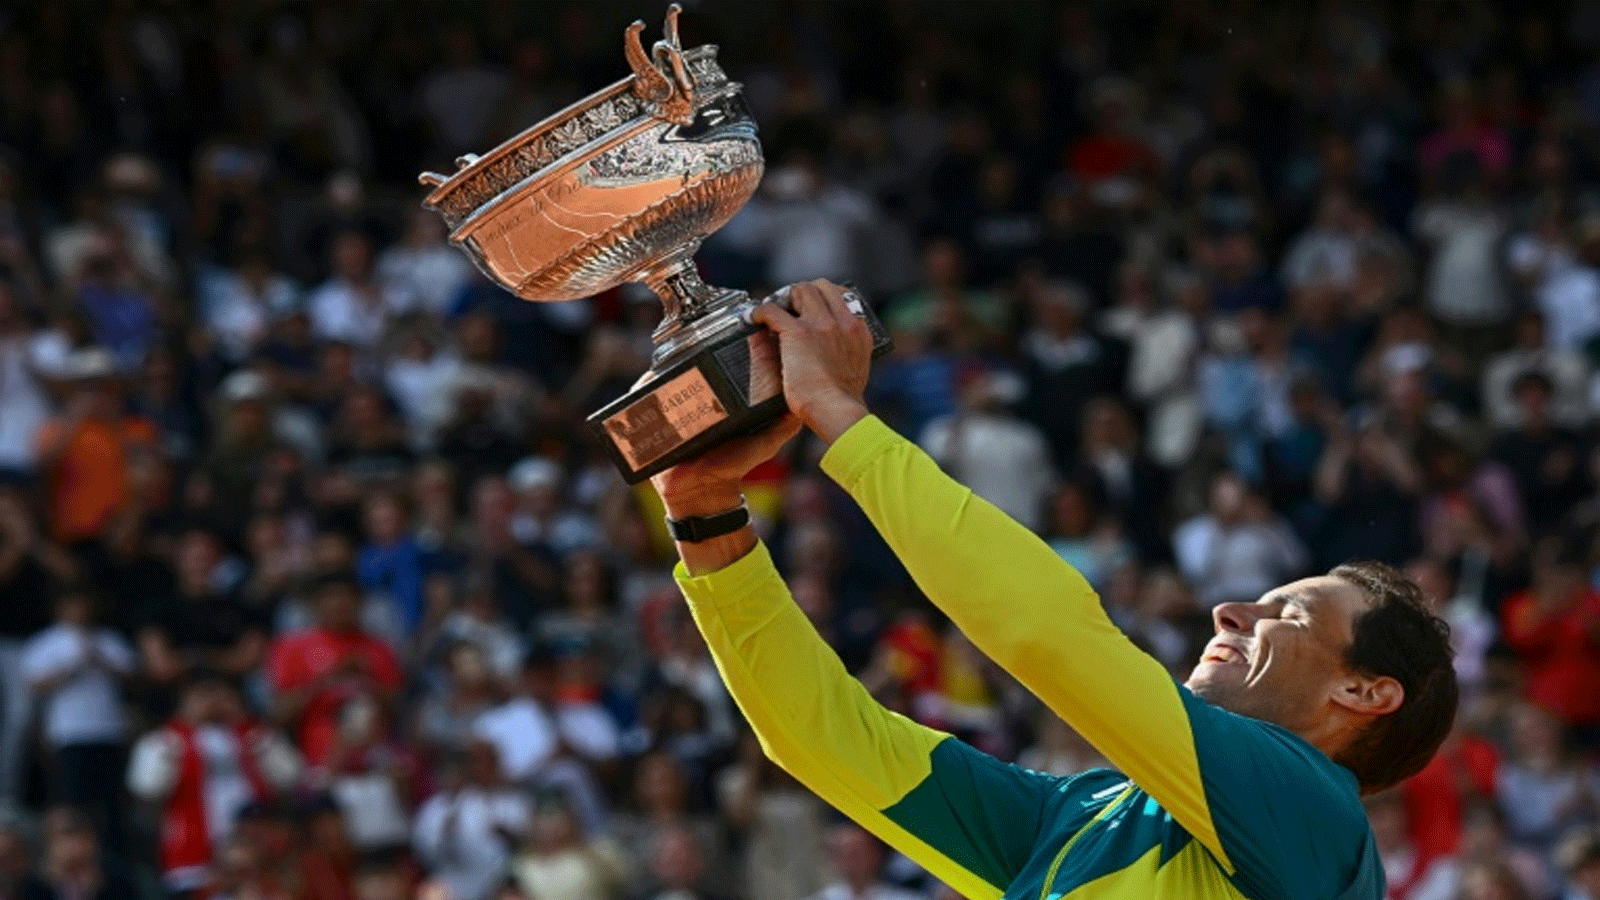 الإسباني رافايل نادال فاز بلقبه الـ 14 في بطولة رولان غاروس الفرنسية لكرة المضرب العام الماضي